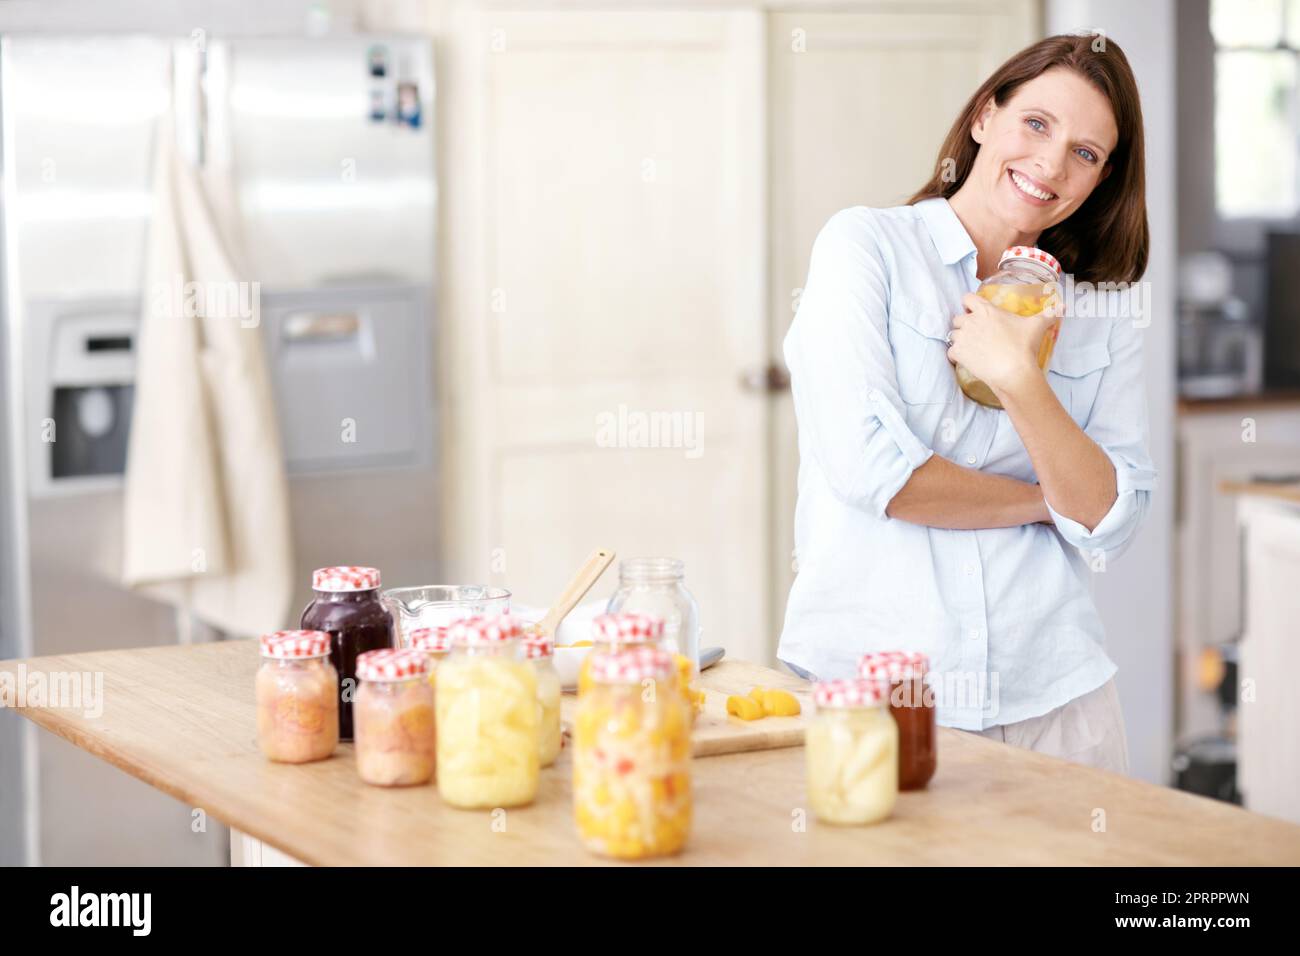 Sie ist stolz auf ihre häuslichen Fähigkeiten. Eine reife Frau, die in der Küche ein Glas an ihre Brust hält. Stockfoto